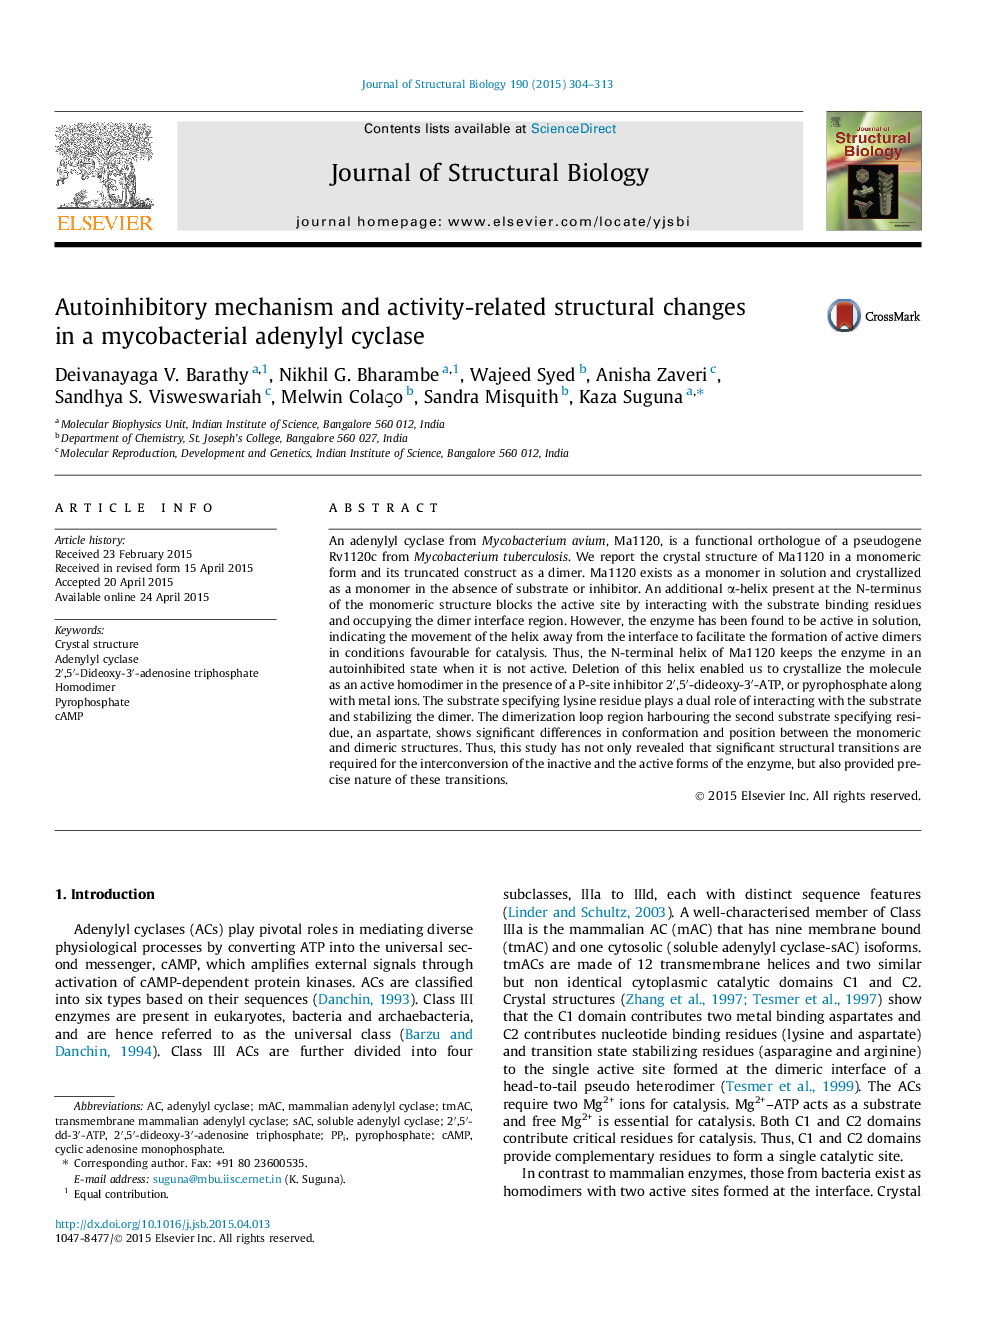 مکانیسم خودکار سازگاری و تغییرات ساختاری مرتبط با فعالیت در آدنیلیل سیکلاس میکوباکتریال 